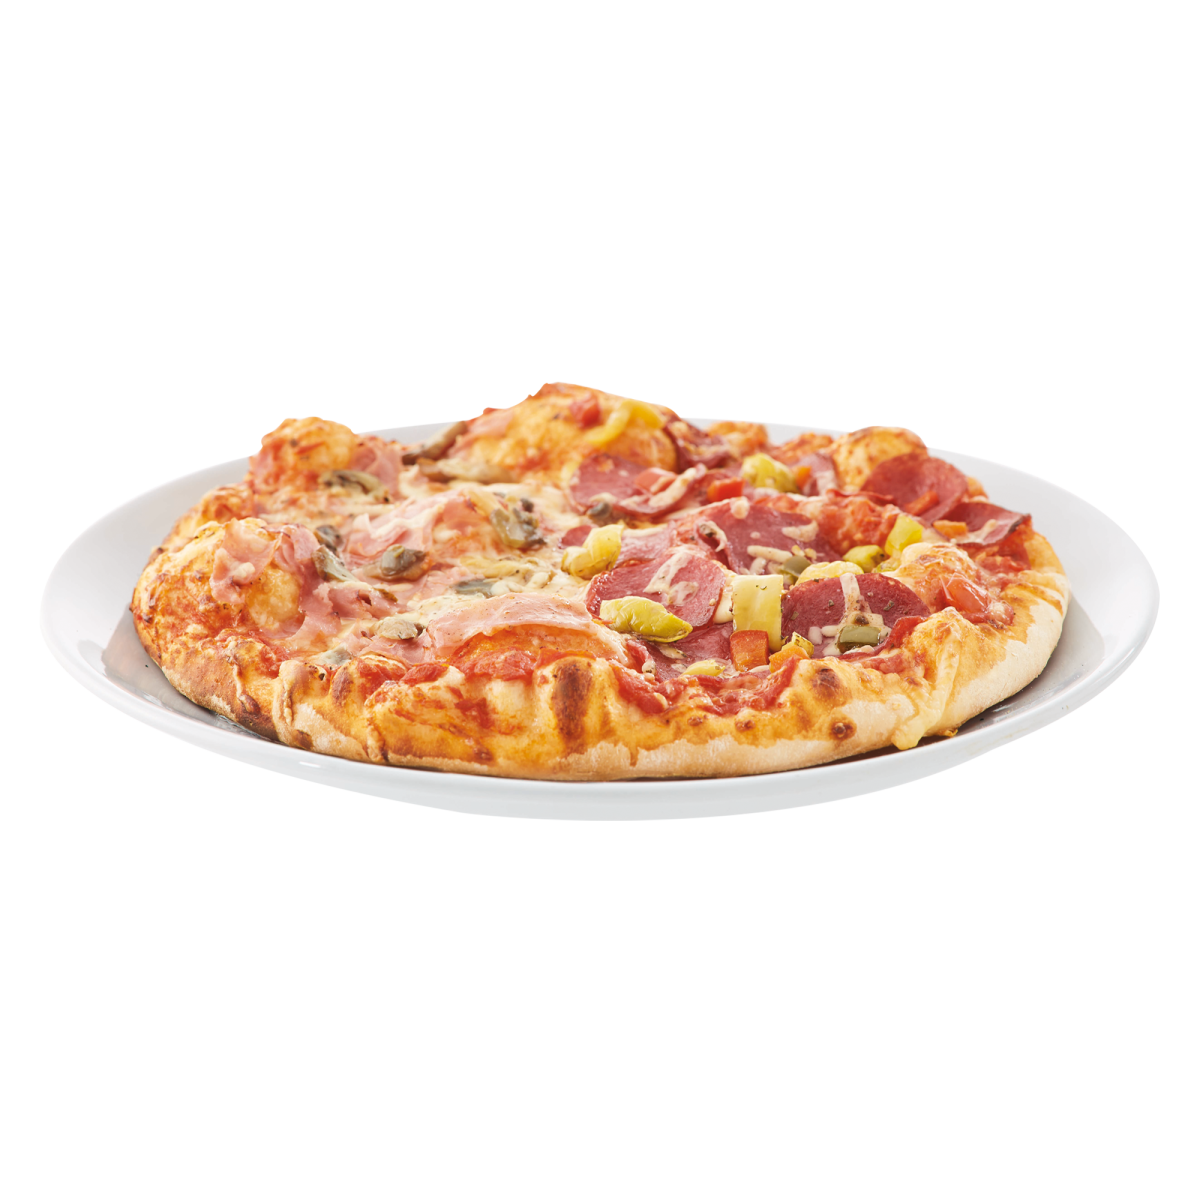 Kategoriebild von Pizzen